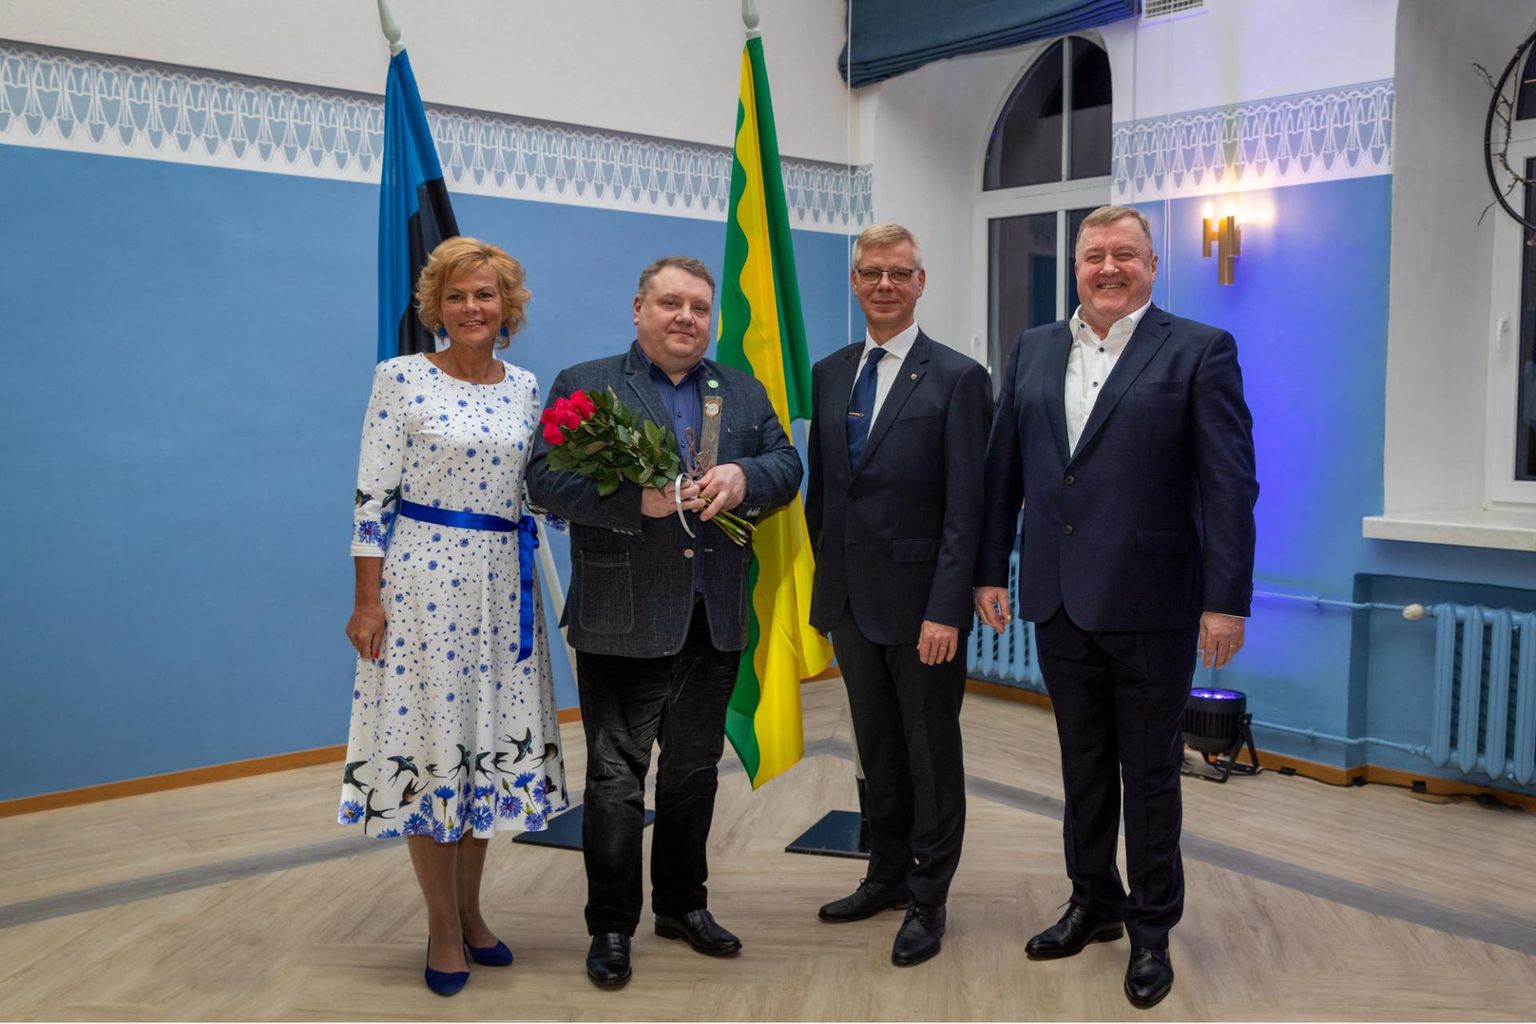 Valla uhkuse tiitli andsid Kalev Saarele üle Põhja-Pärnumaa vallavolikogu esimees Ülle Vapper ja vallavanem Aivar Mäe.